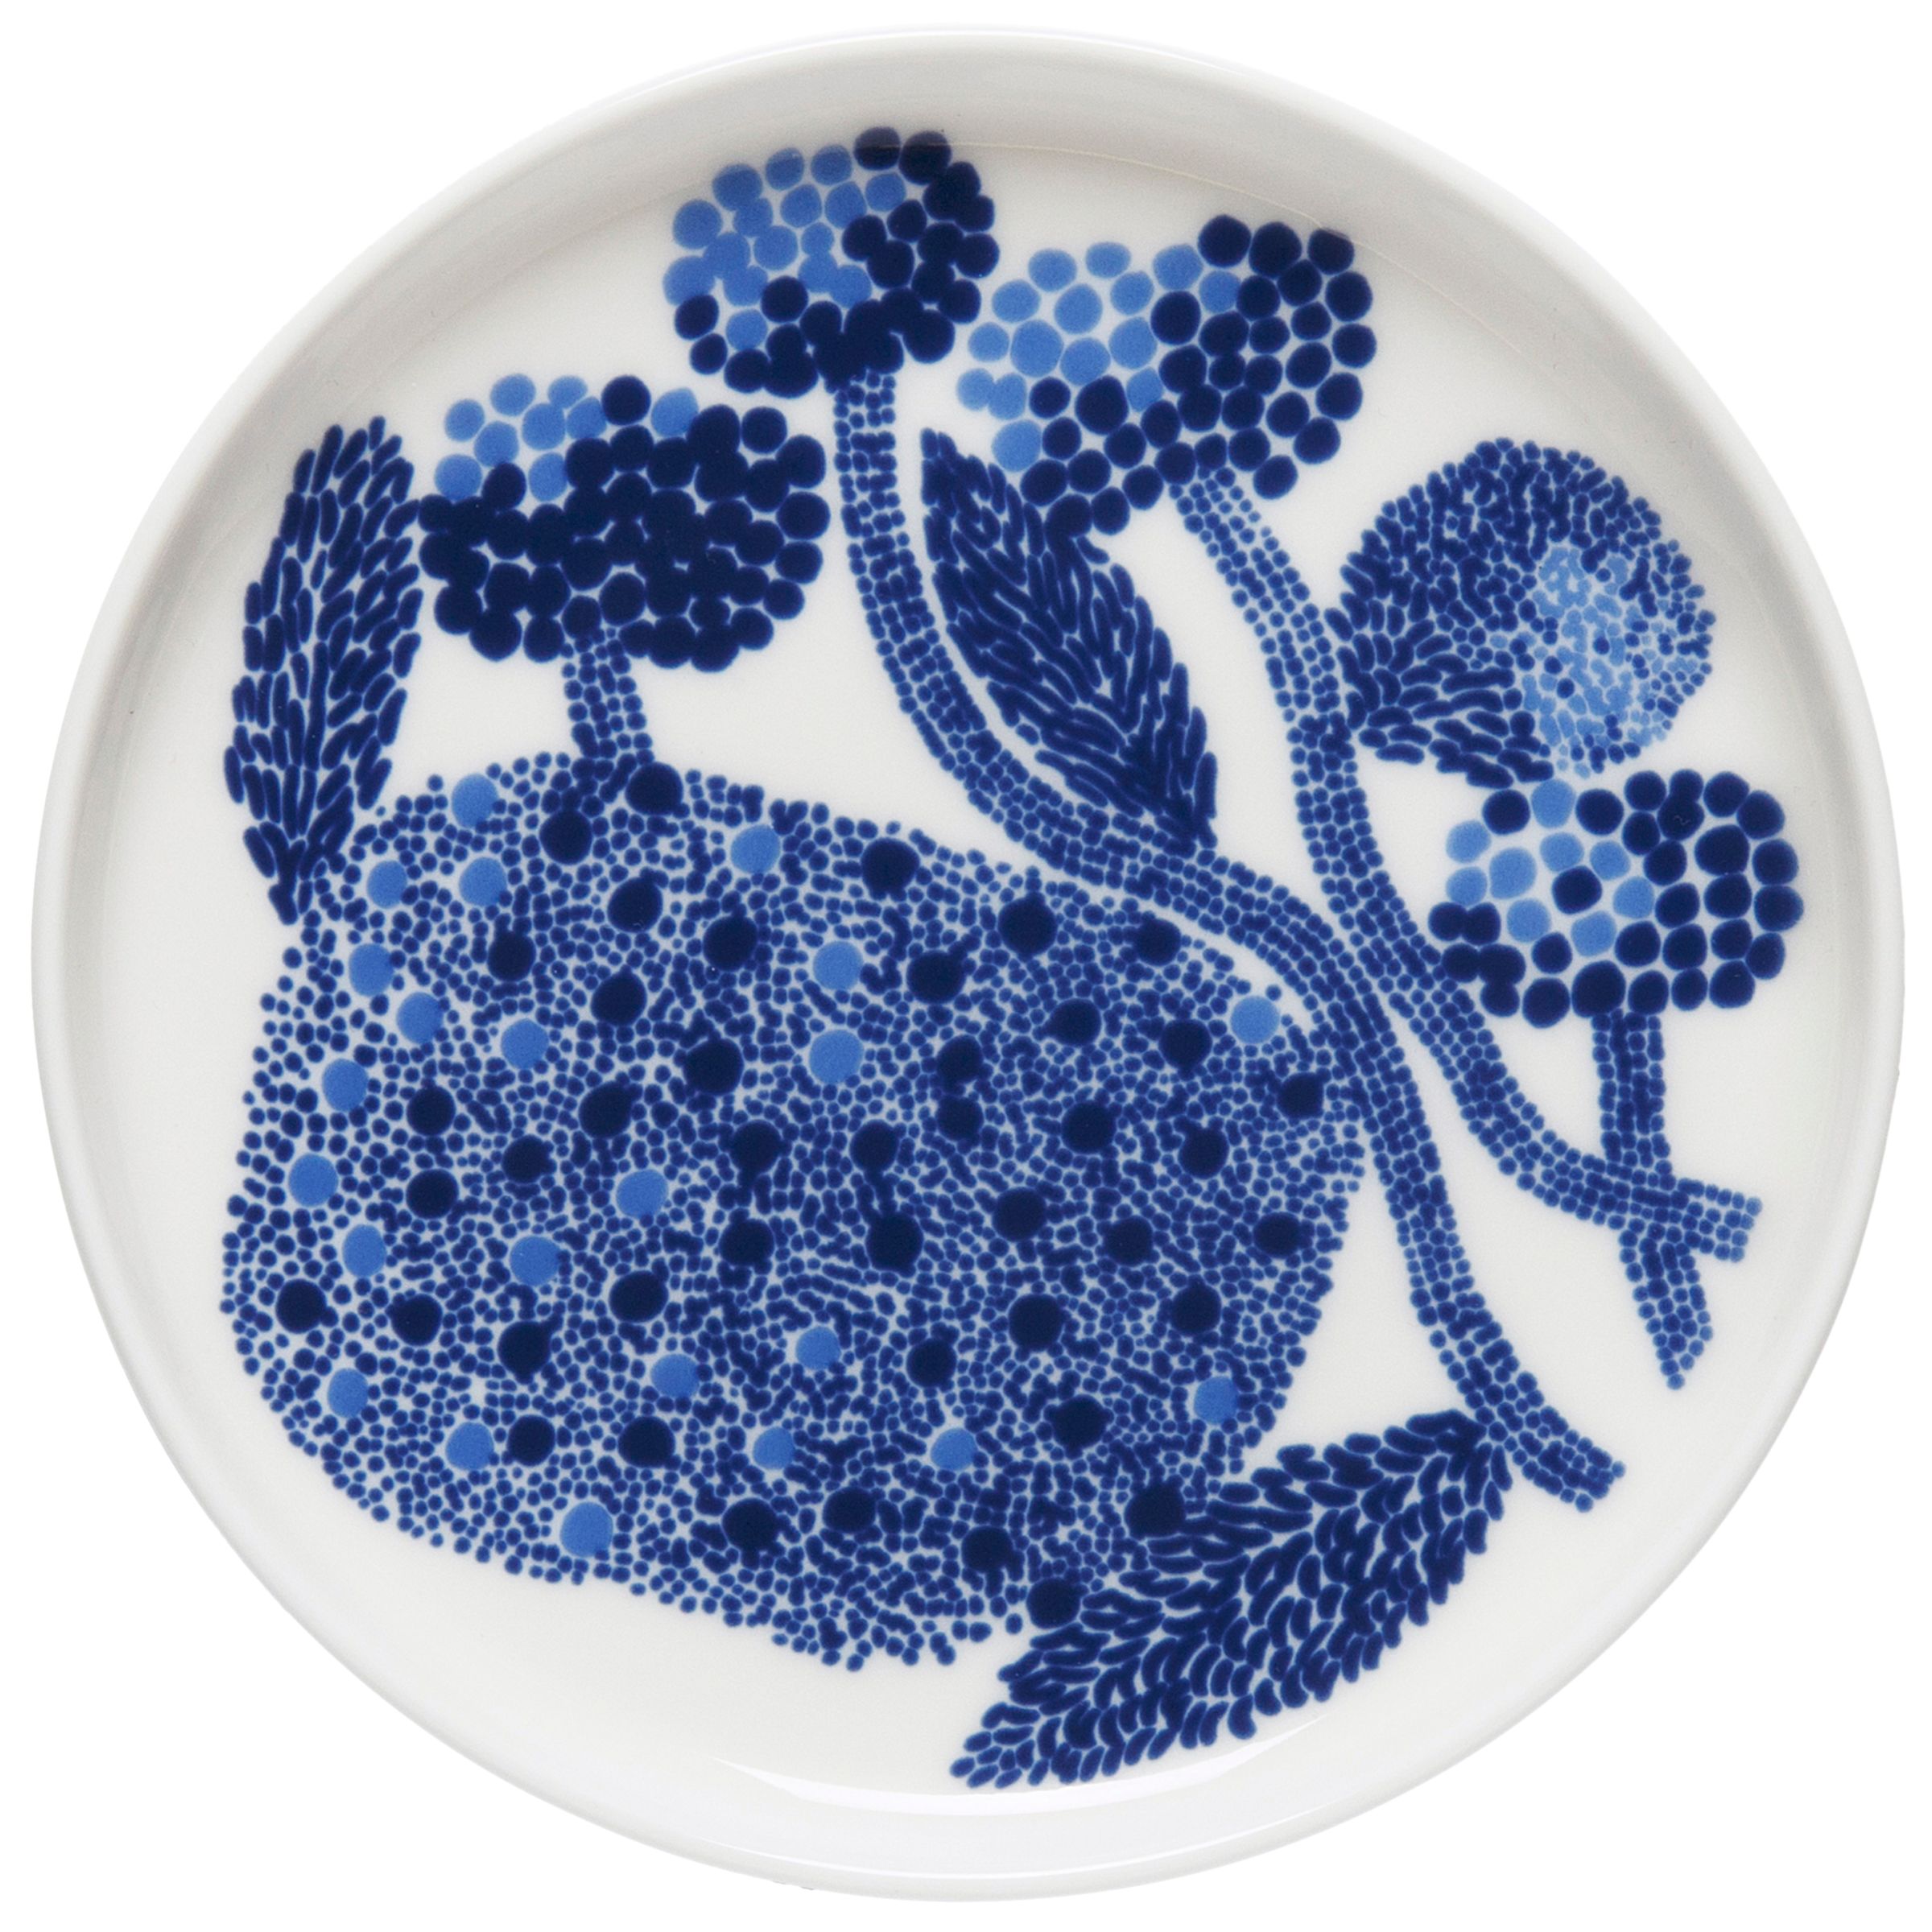 Marimekko Oiva Mynsteri Plate, Blue/White, 